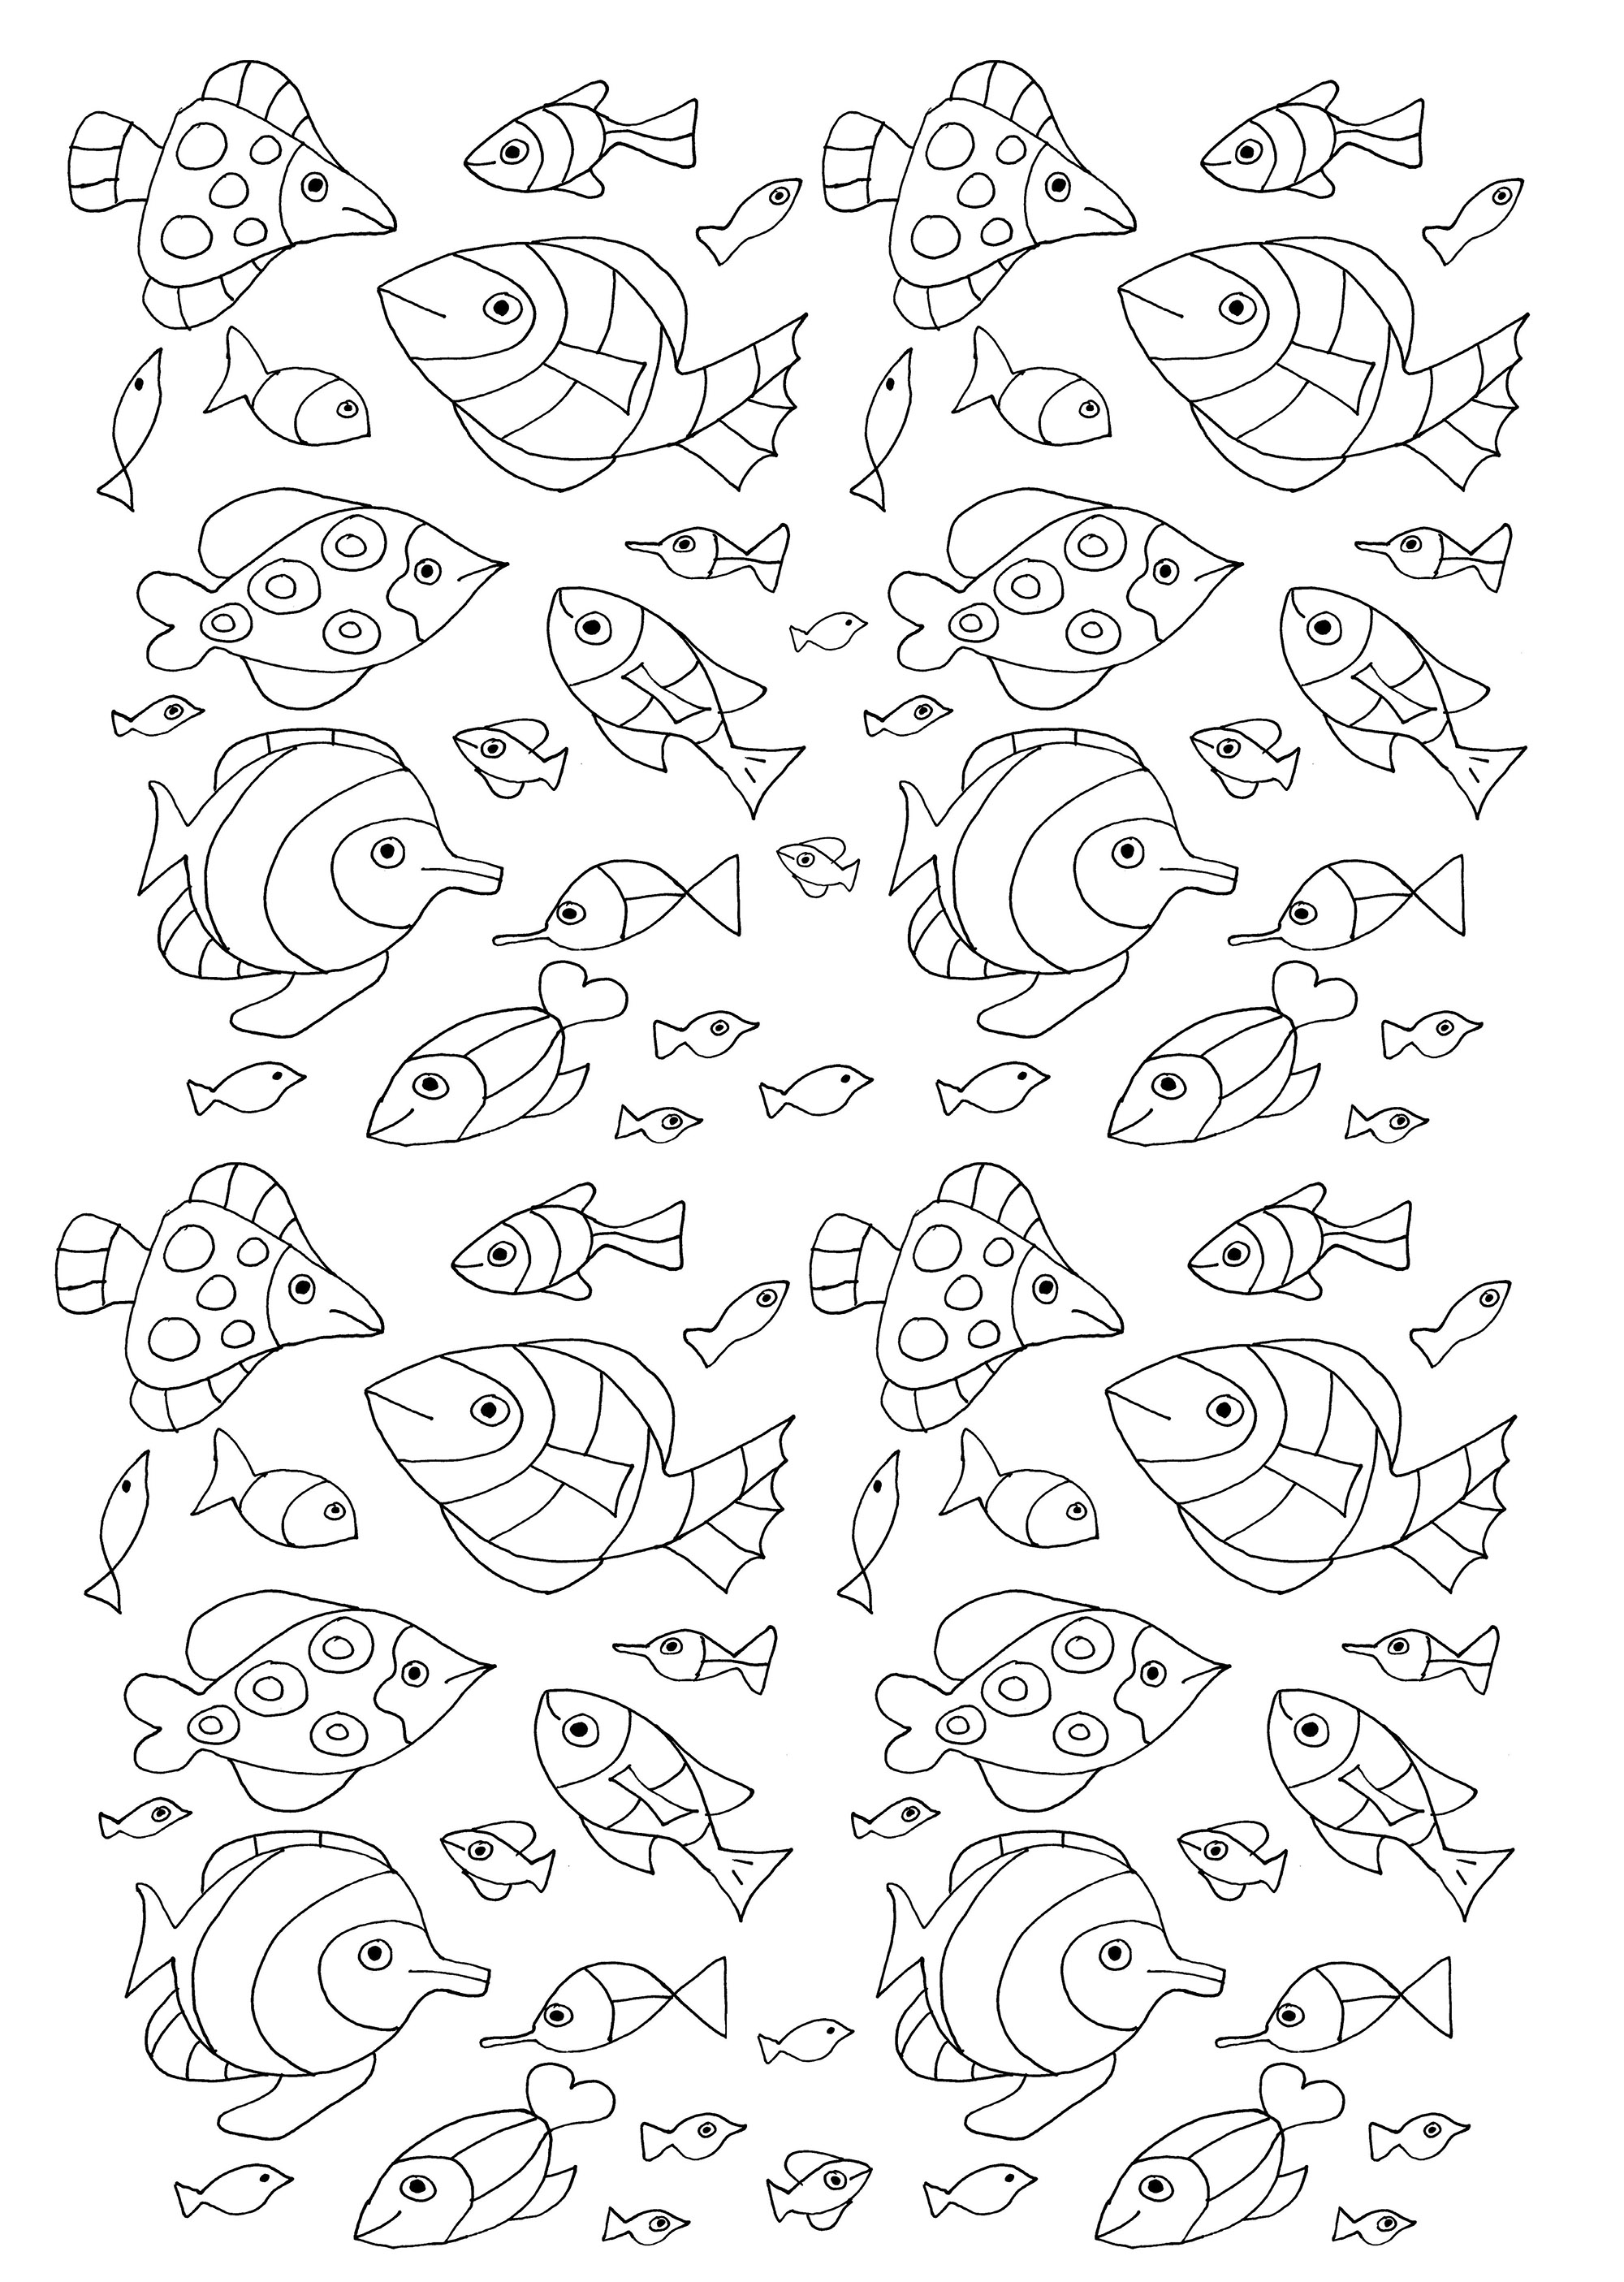 100 peixinhos para colorir. Uma variedade de peixes com desenhos simples que podem ser coloridos.